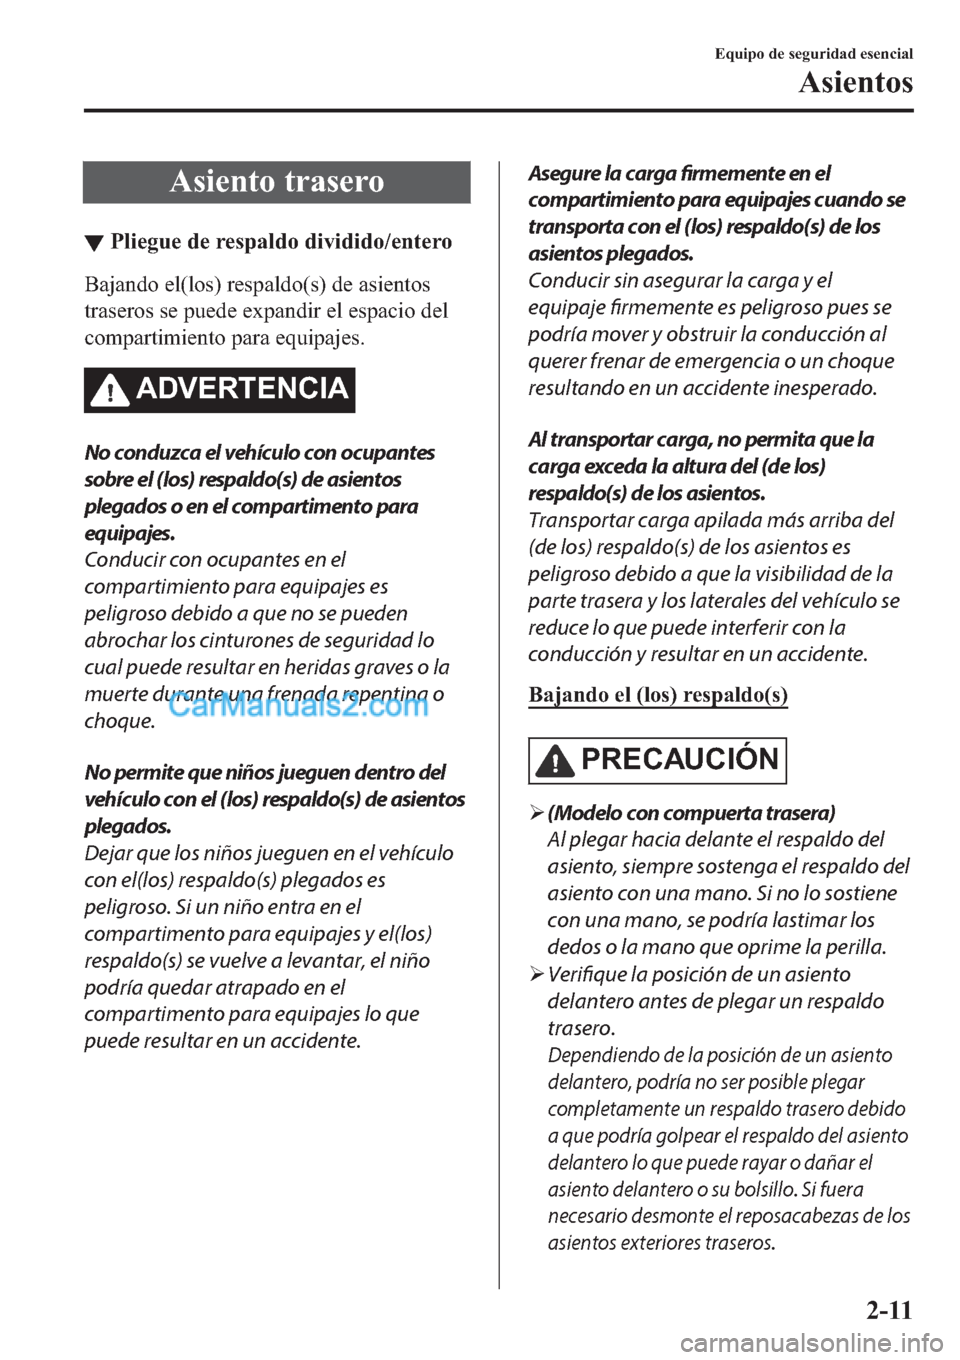 MAZDA MODEL 2 2019  Manual del propietario (in Spanish) �$�V�L�H�Q�W�R��W�U�D�V�H�U�R
▼�3�O�L�H�J�X�H��G�H��U�H�V�S�D�O�G�R��G�L�Y�L�G�L�G�R��H�Q�W�H�U�R
�%�D�M�D�Q�G�R��H�O��O�R�V���U�H�V�S�D�O�G�R��V���G�H��D�V�L�H�Q�W�R�V
�W�U�D�V�H�U�R�V